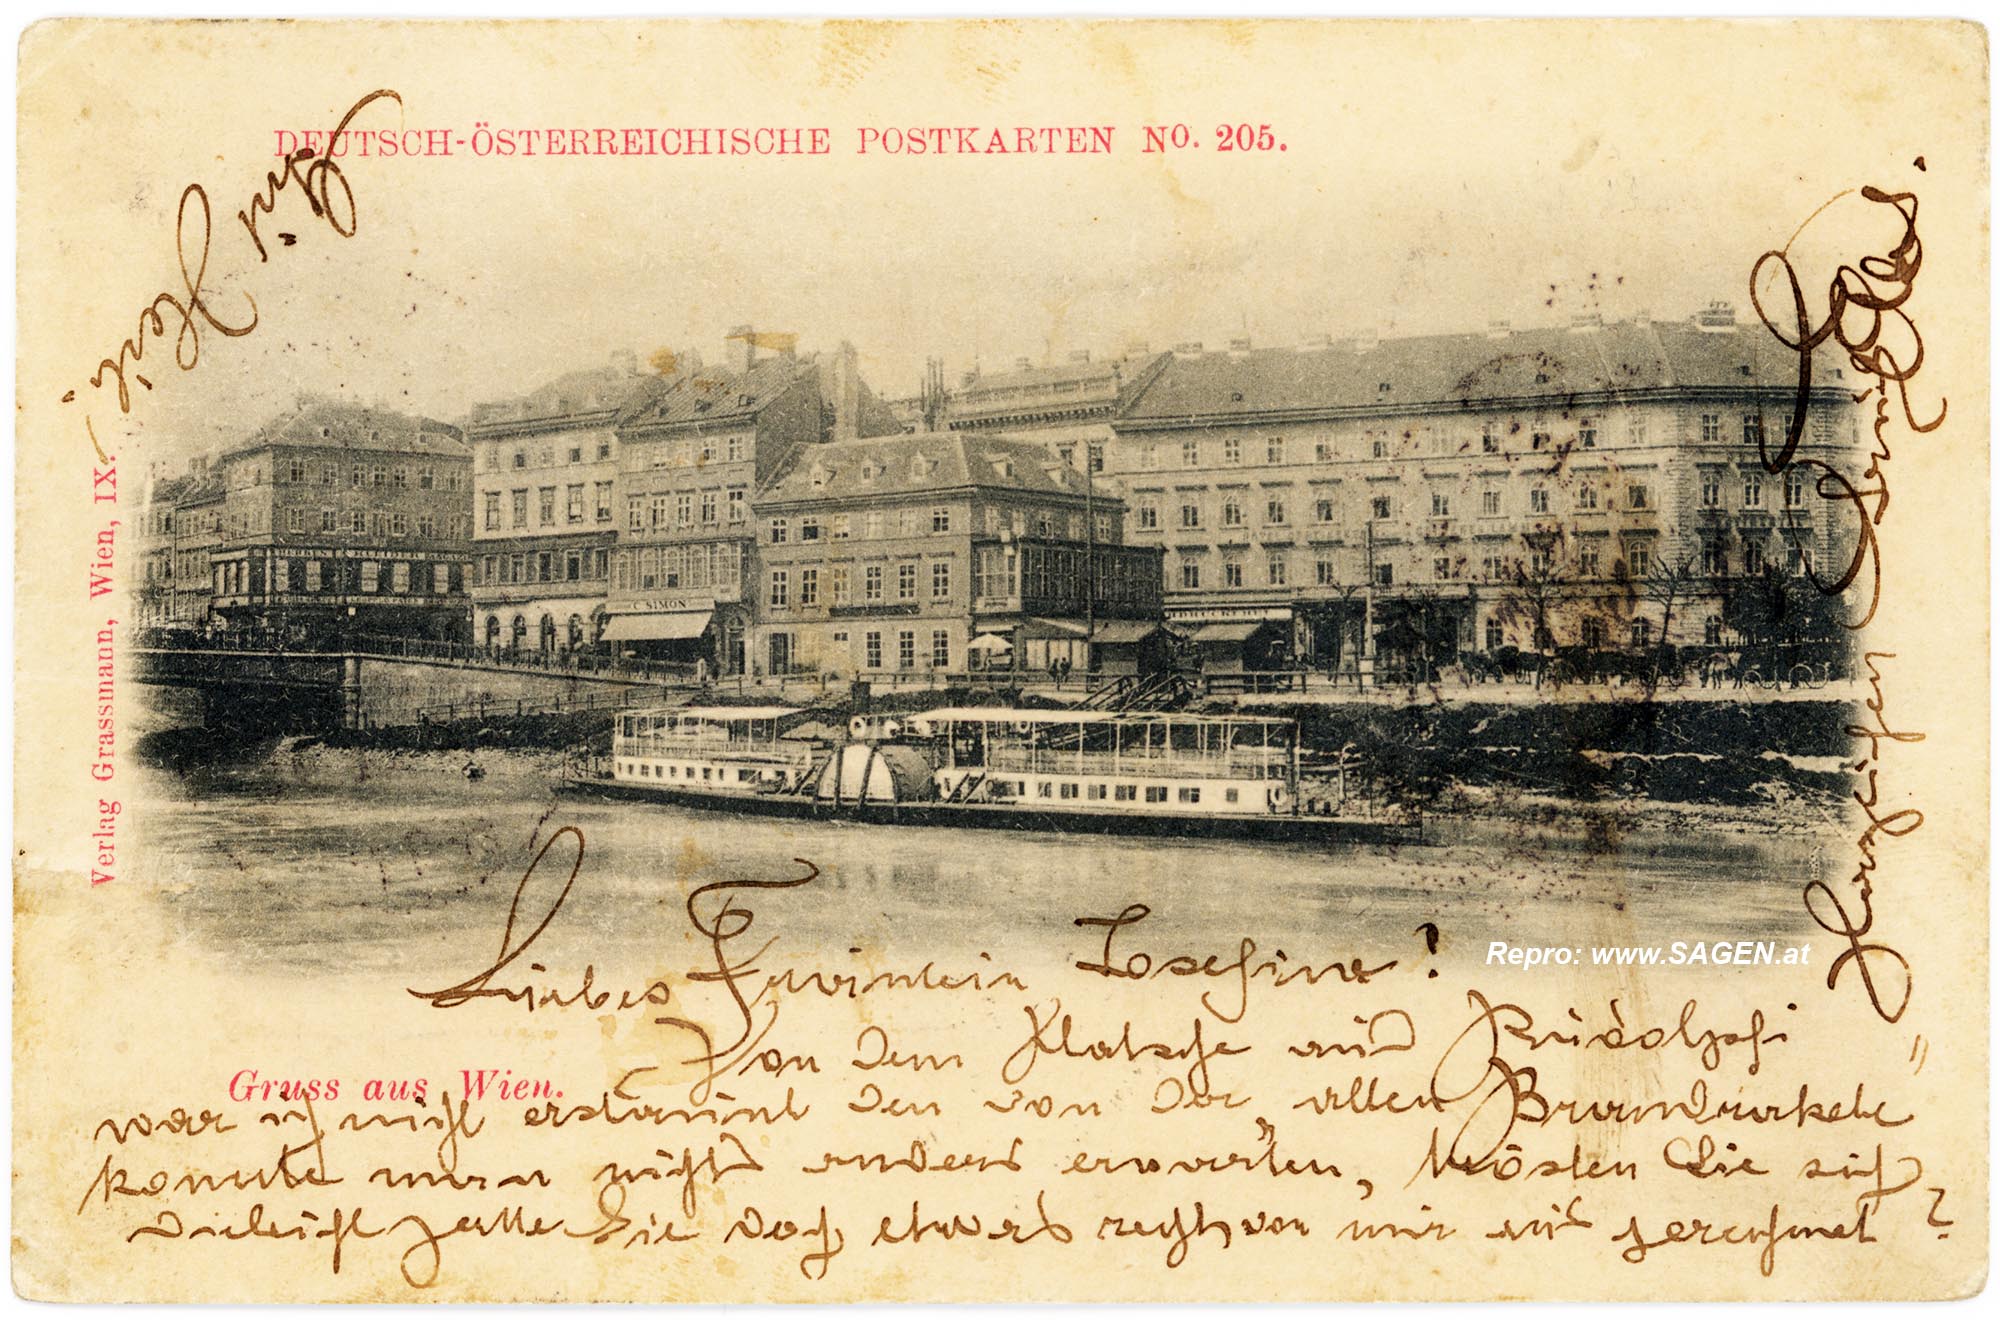 Wien, Schiff am Donaukanal um 1898